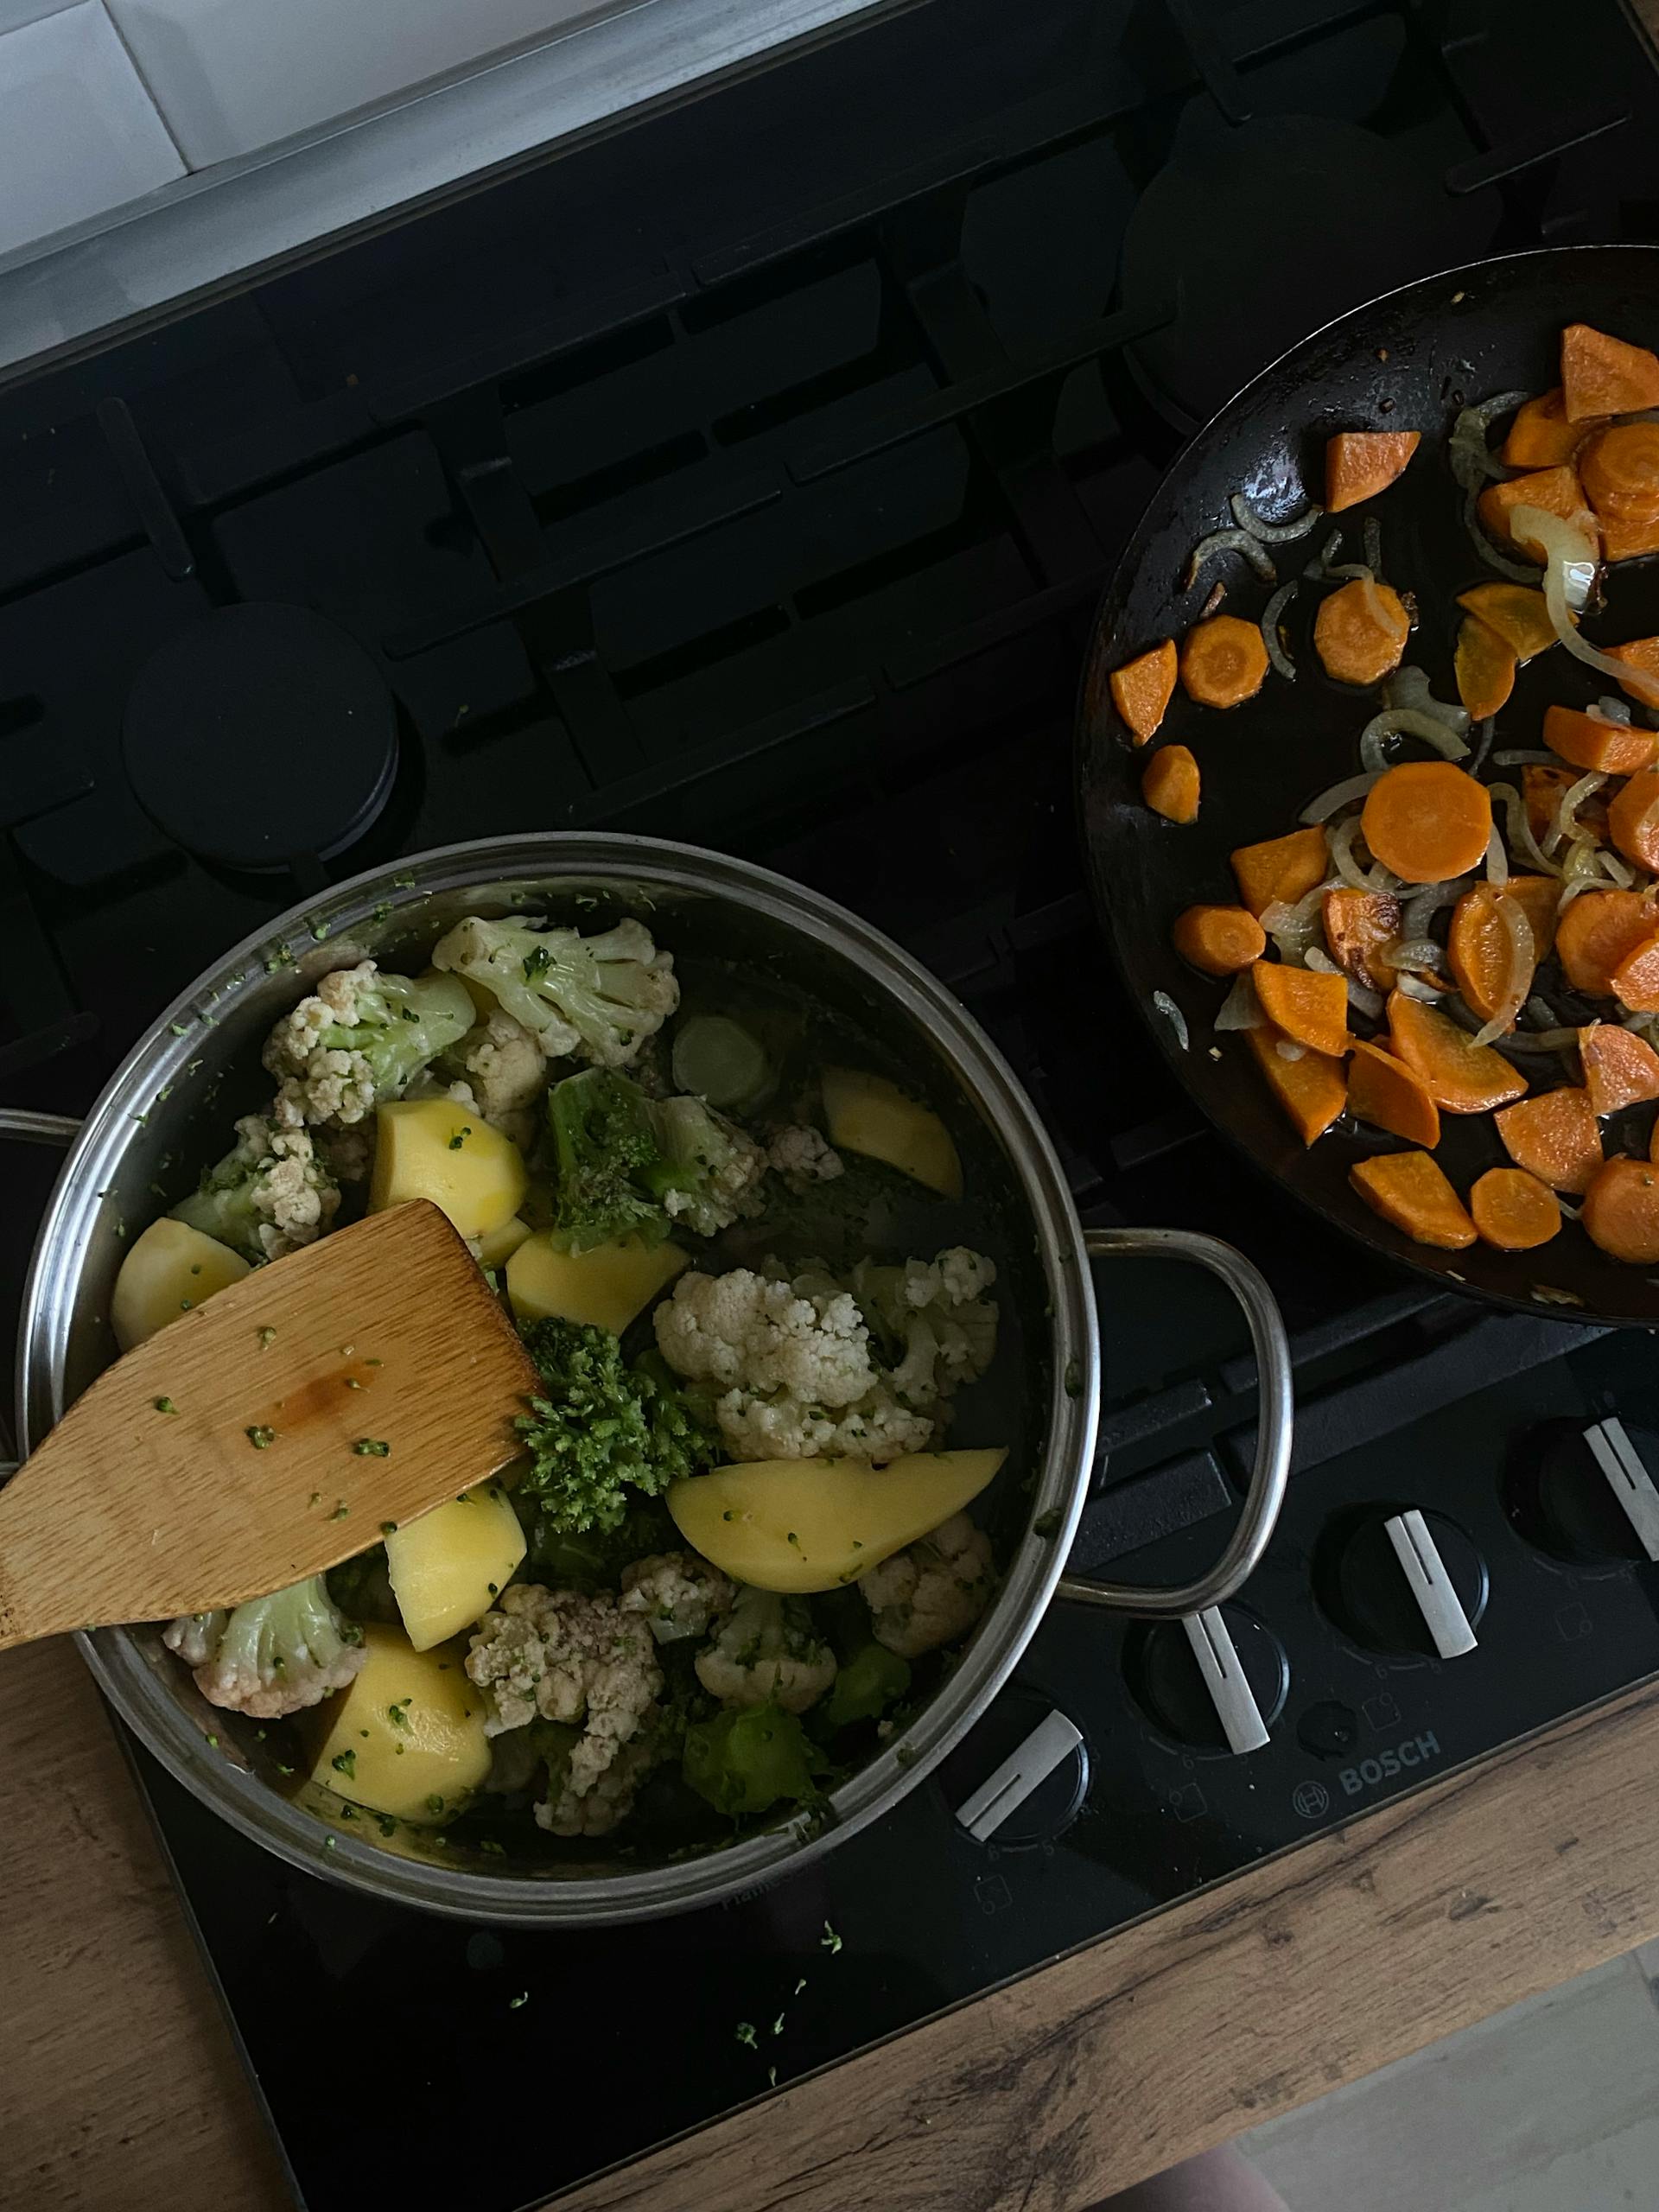 Des pots de nourriture sur un réchaud | Source : Pexels